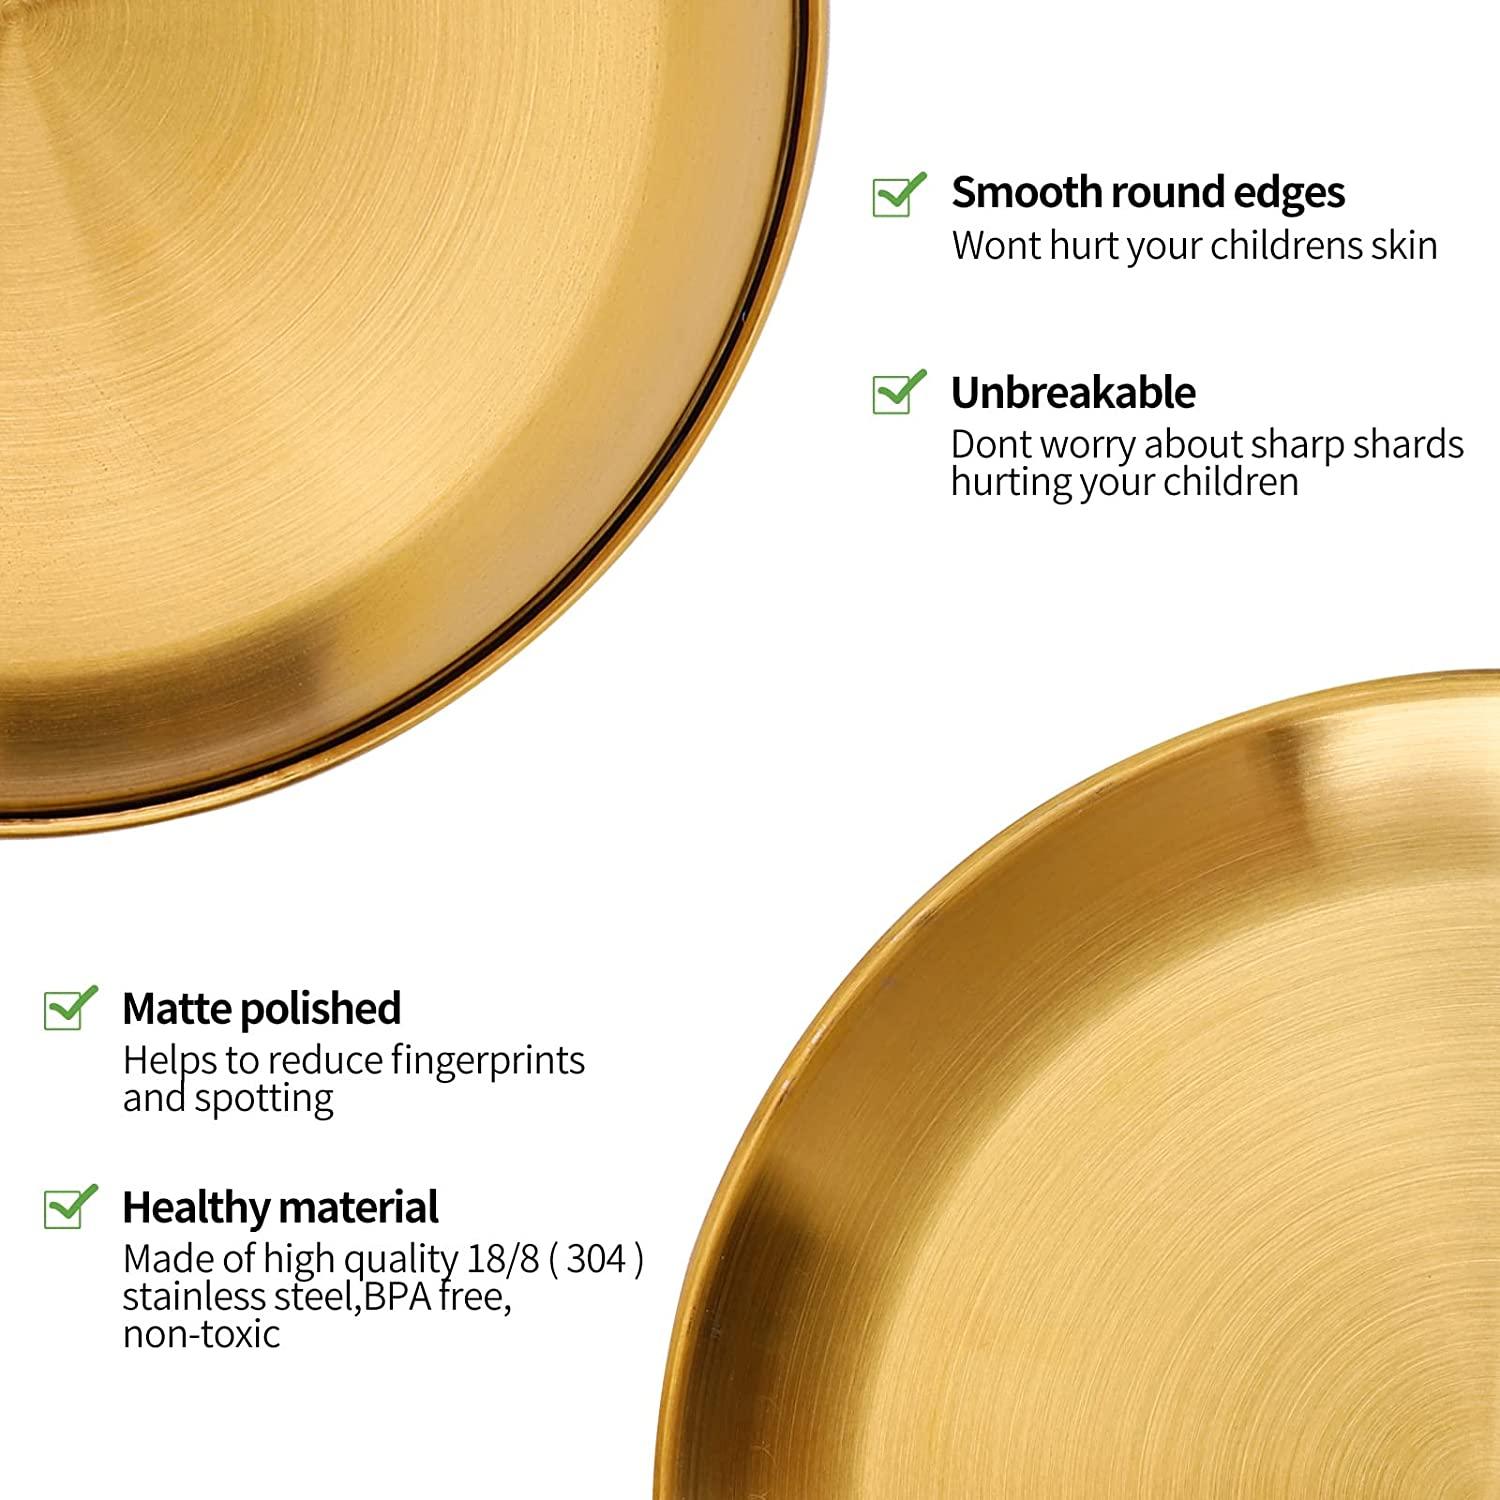 Gold Plate 30cm - chefmay.com